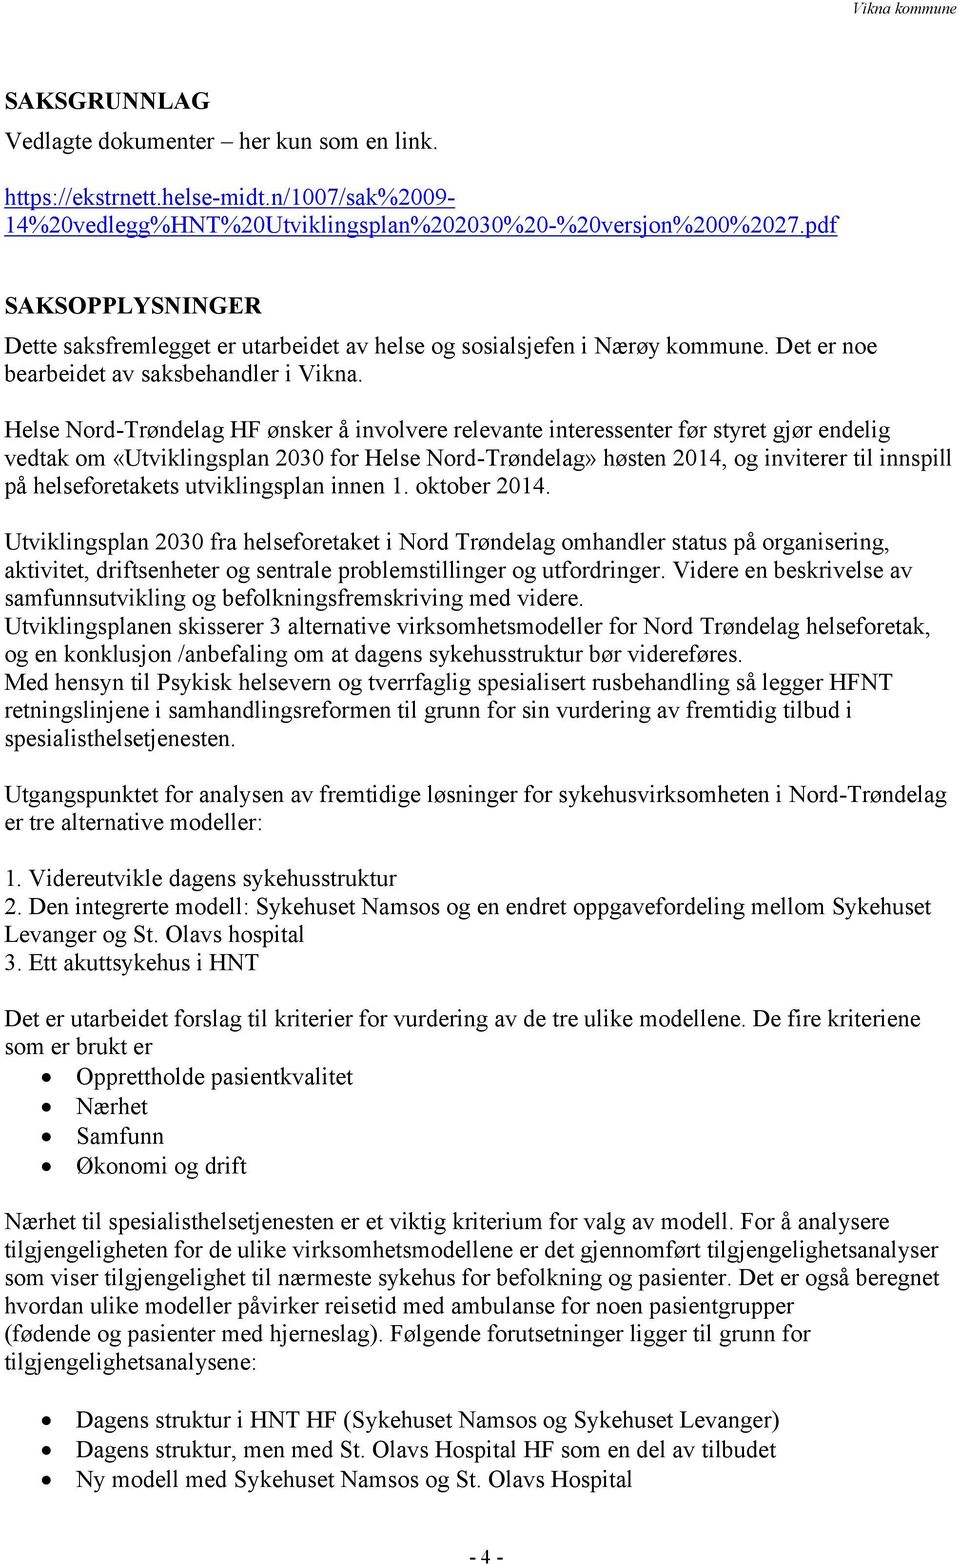 Helse Nord-Trøndelag HF ønsker å involvere relevante interessenter før styret gjør endelig vedtak om «Utviklingsplan 2030 for Helse Nord-Trøndelag» høsten 2014, og inviterer til innspill på